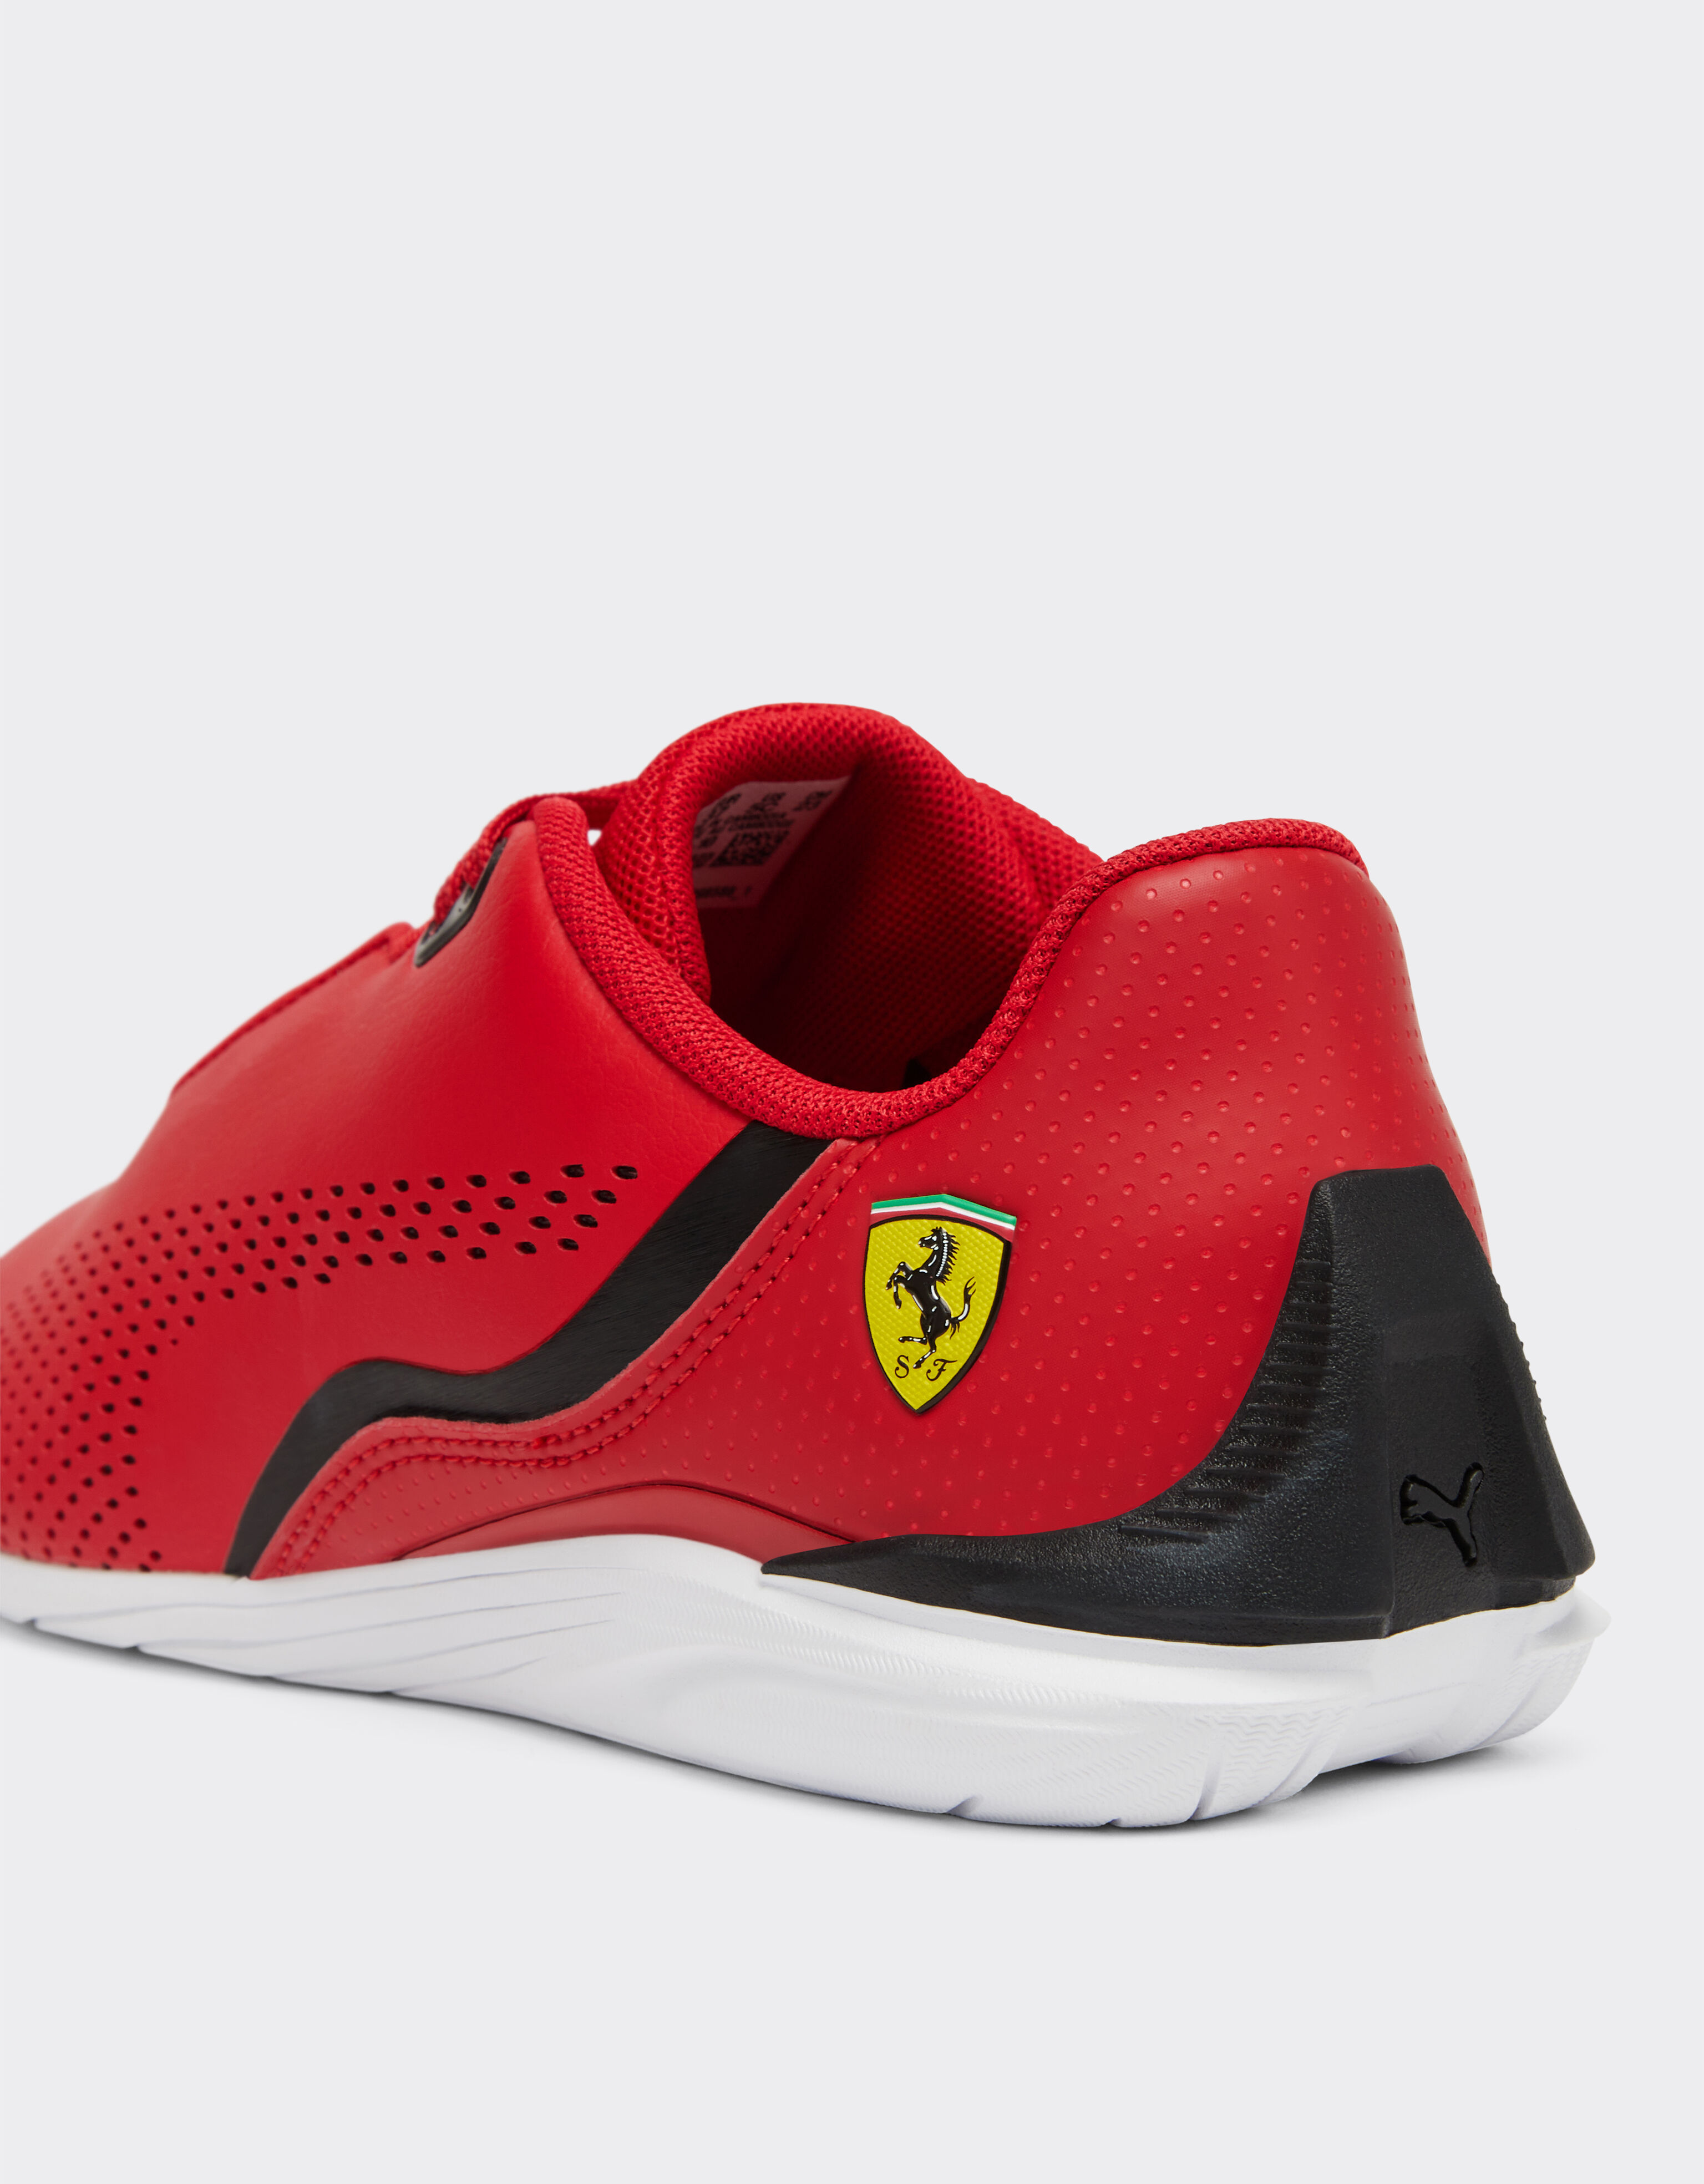 Ferrari Puma für Scuderia Ferrari Drift Cat Decima Schuhe für Jungen und Mädchen Rosso Corsa F1116fK